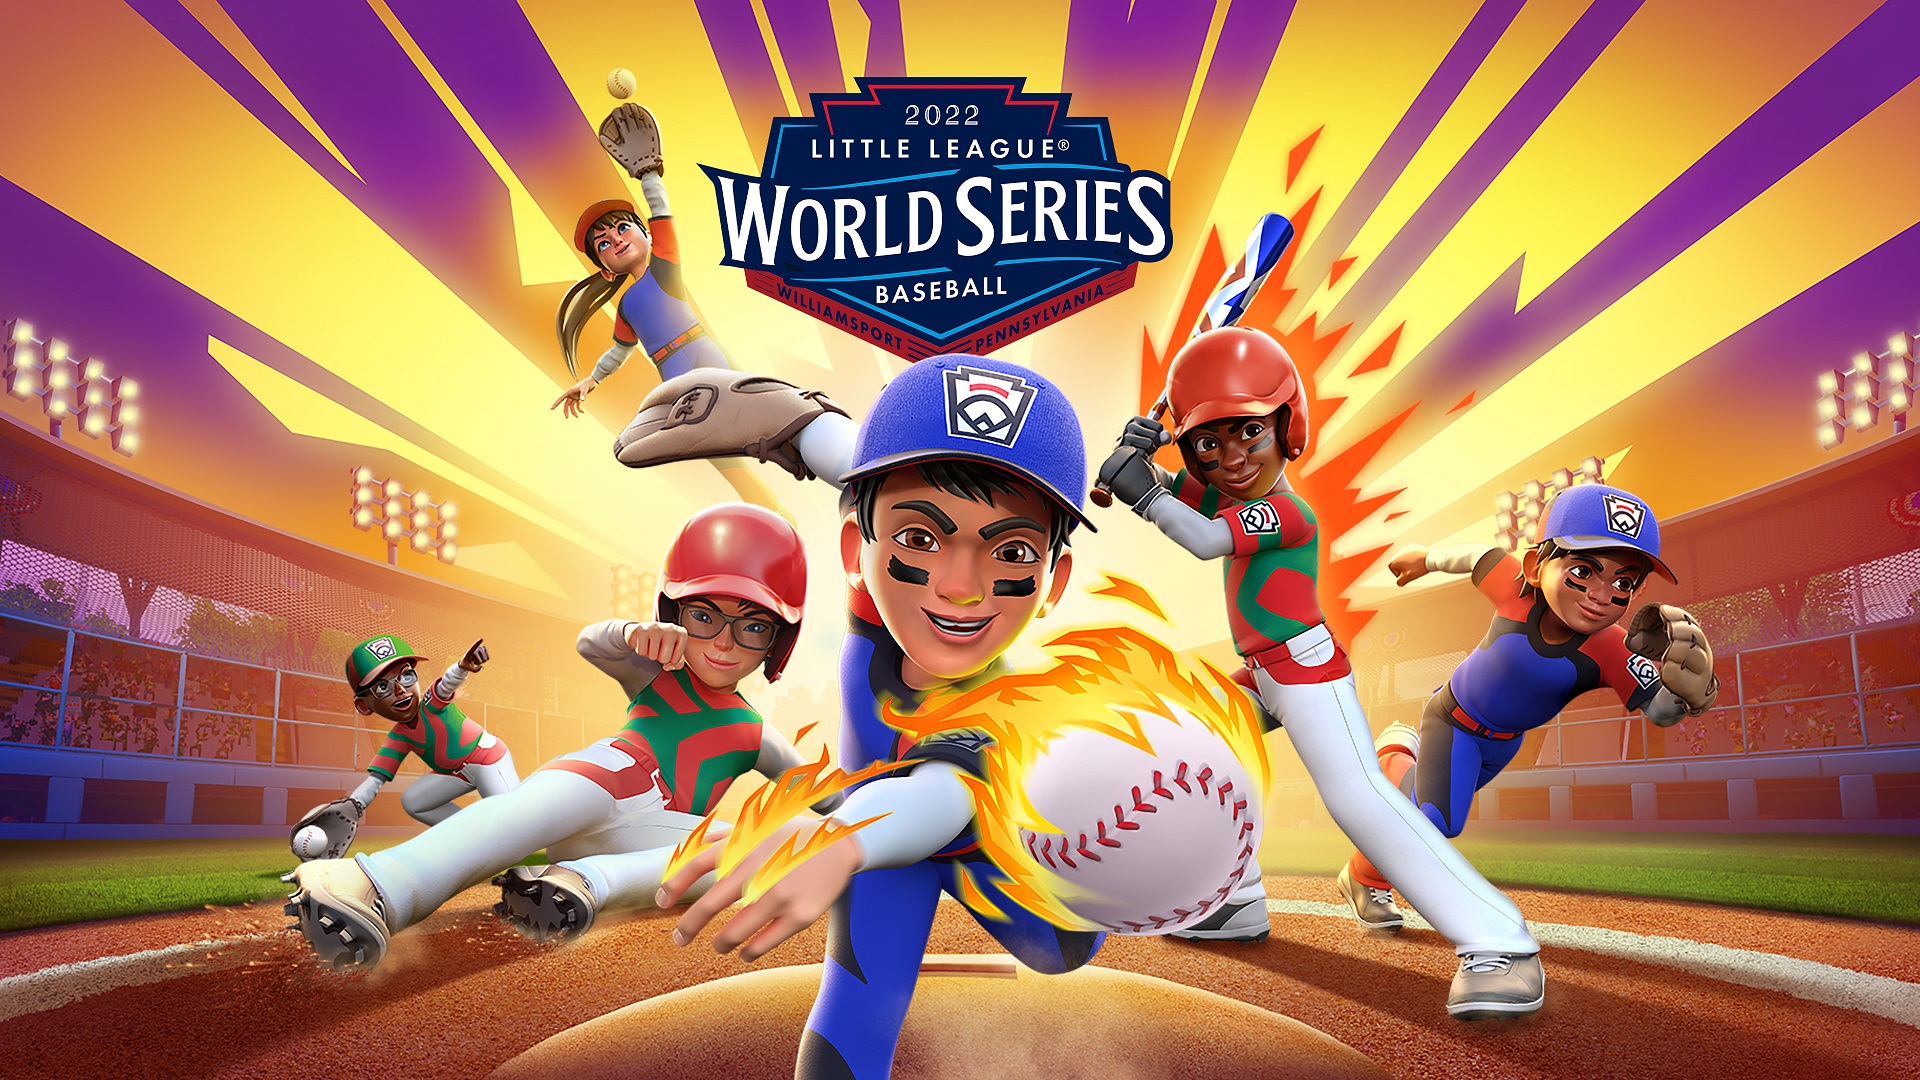 Little League World Series Béisbol 2022 06 20 22 1